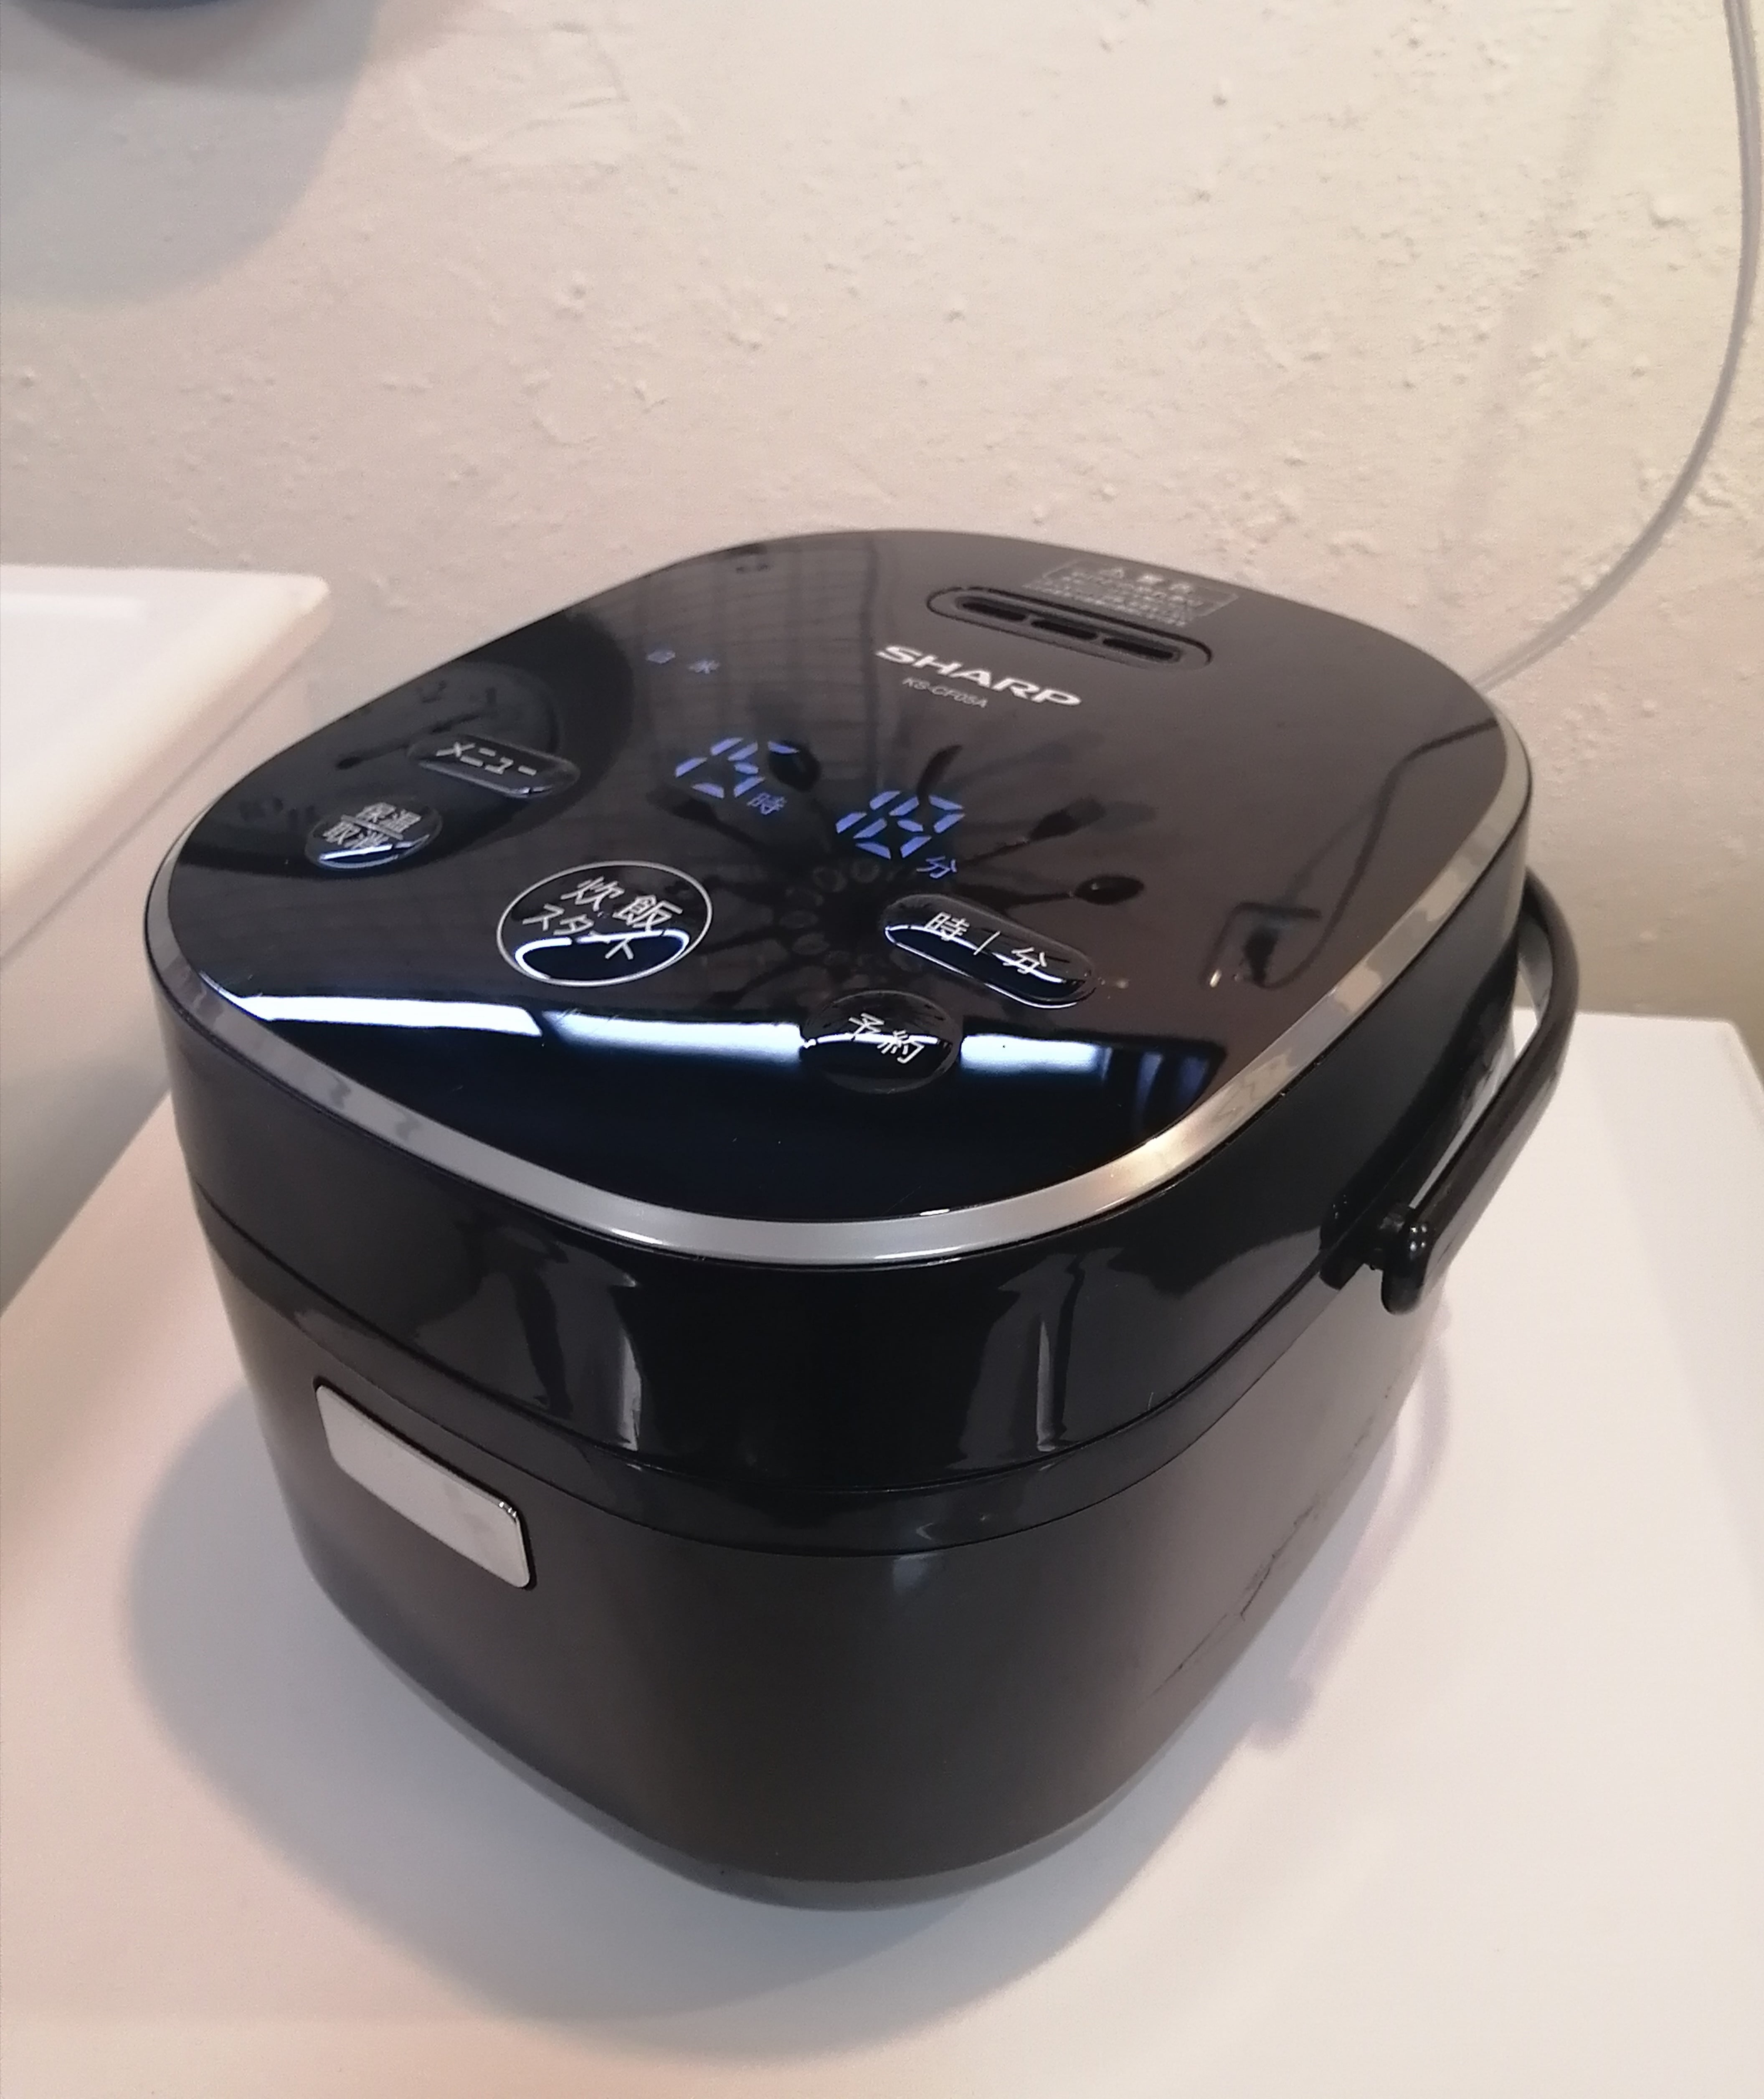 3合 2019年製 SHARP ジャー炊飯器 パン調理機能あり KS-CF05A-B 中村区亀島リサイクルショップ ハラダワークス